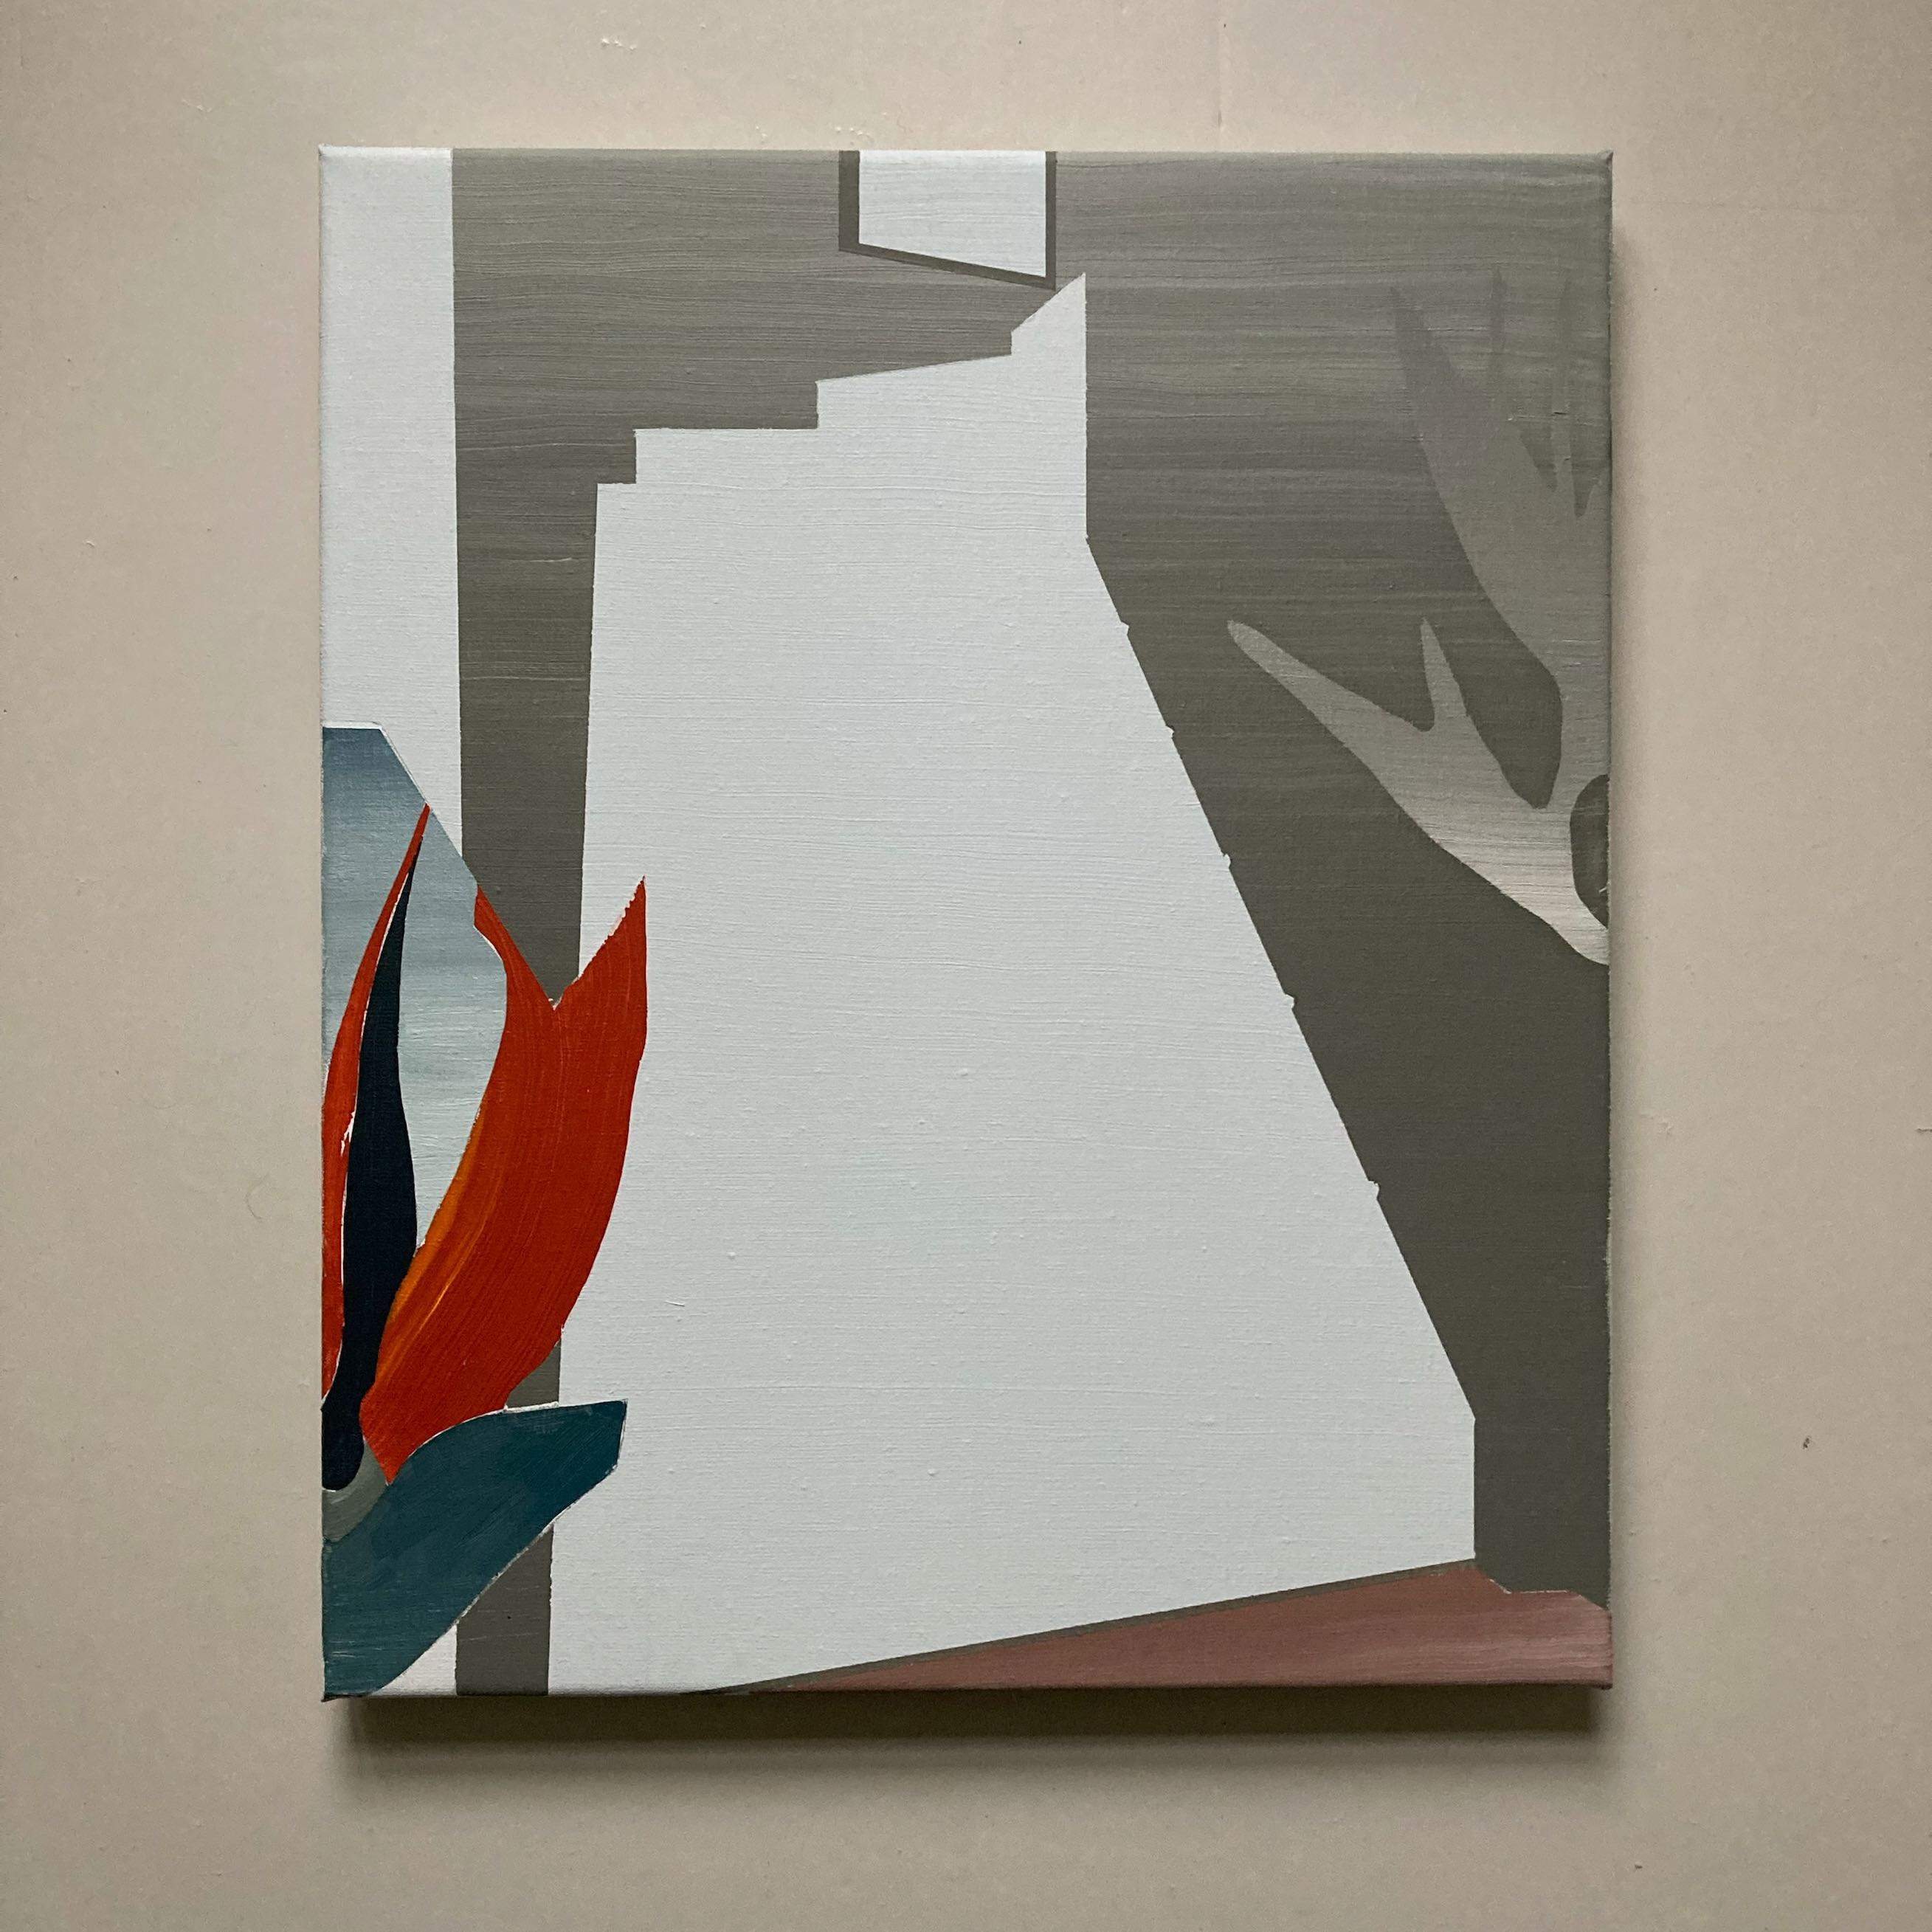 'stepless', 42 x 50 cm, acrylics on canvas, 2021